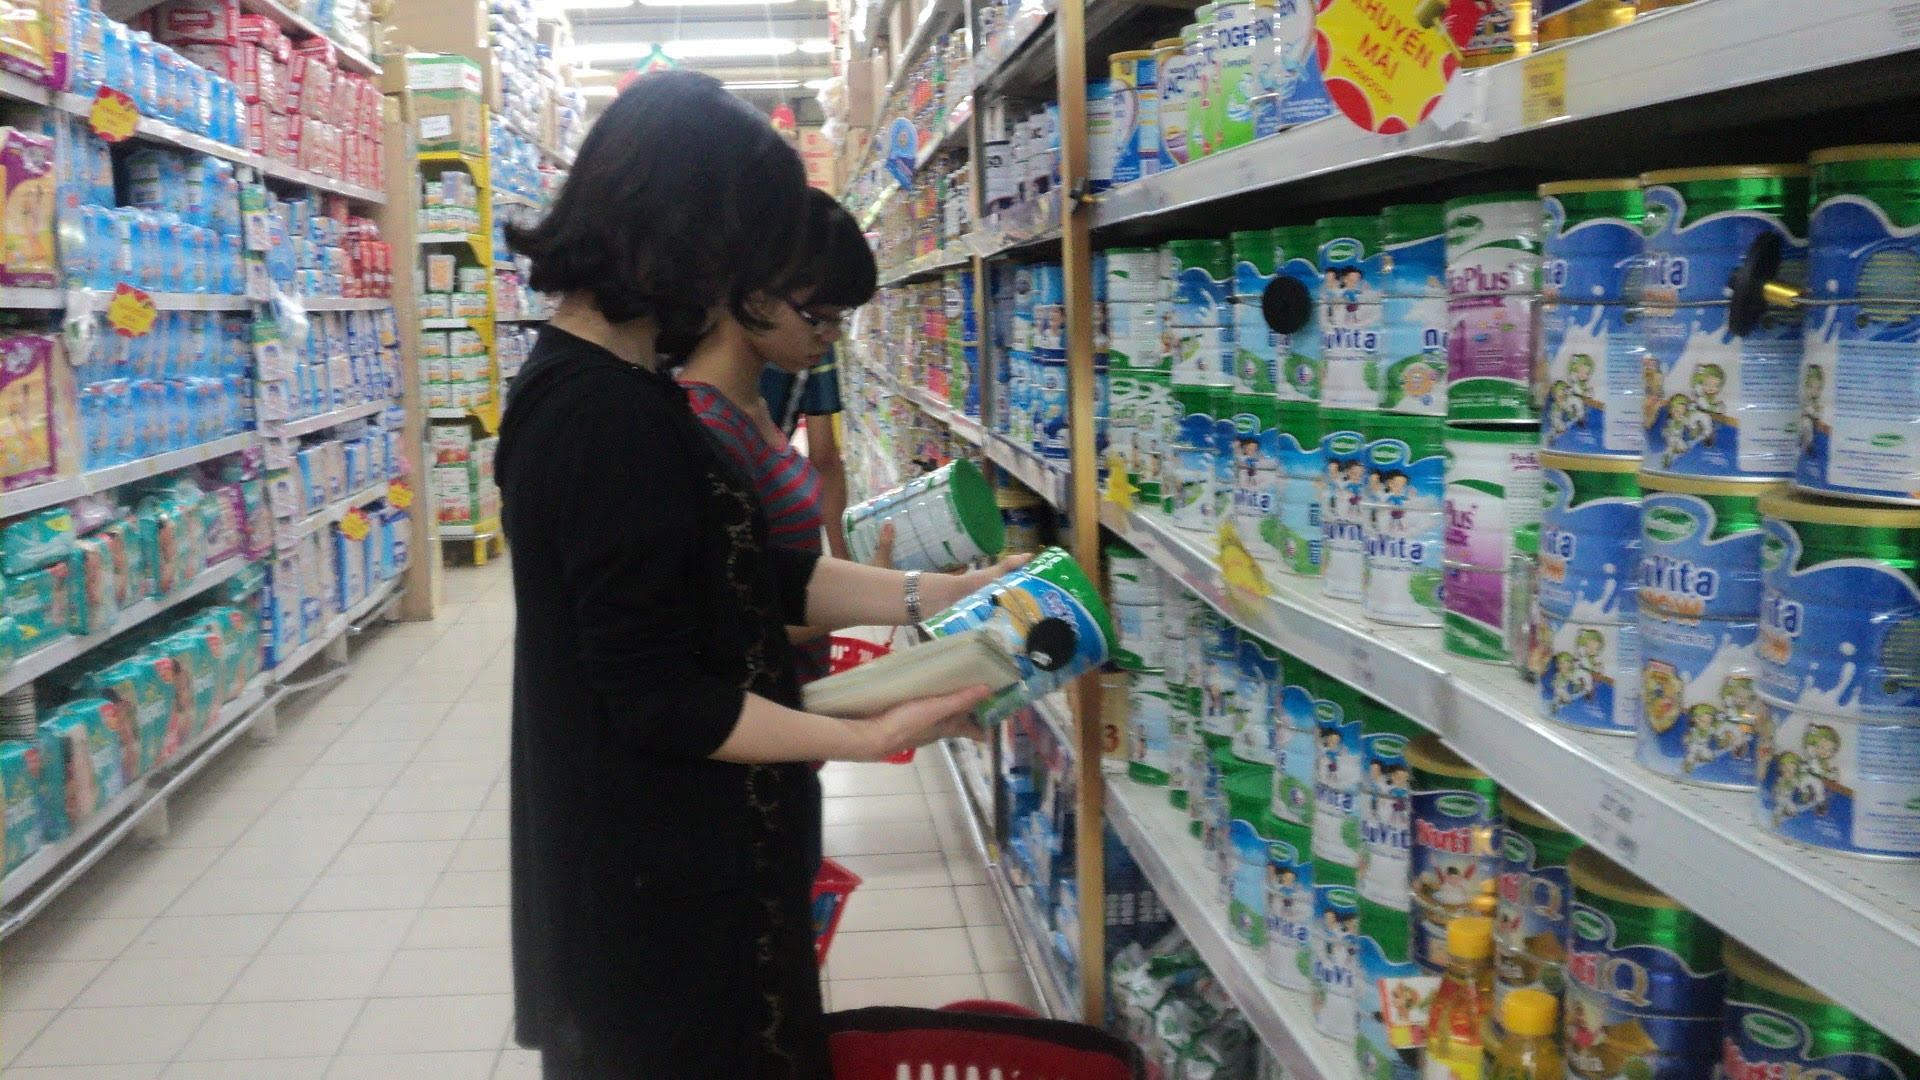 Sữa nhập khẩu vào Việt Nam đạt 11,8 tỷ USD, dự báo tăng 12% mỗi năm 